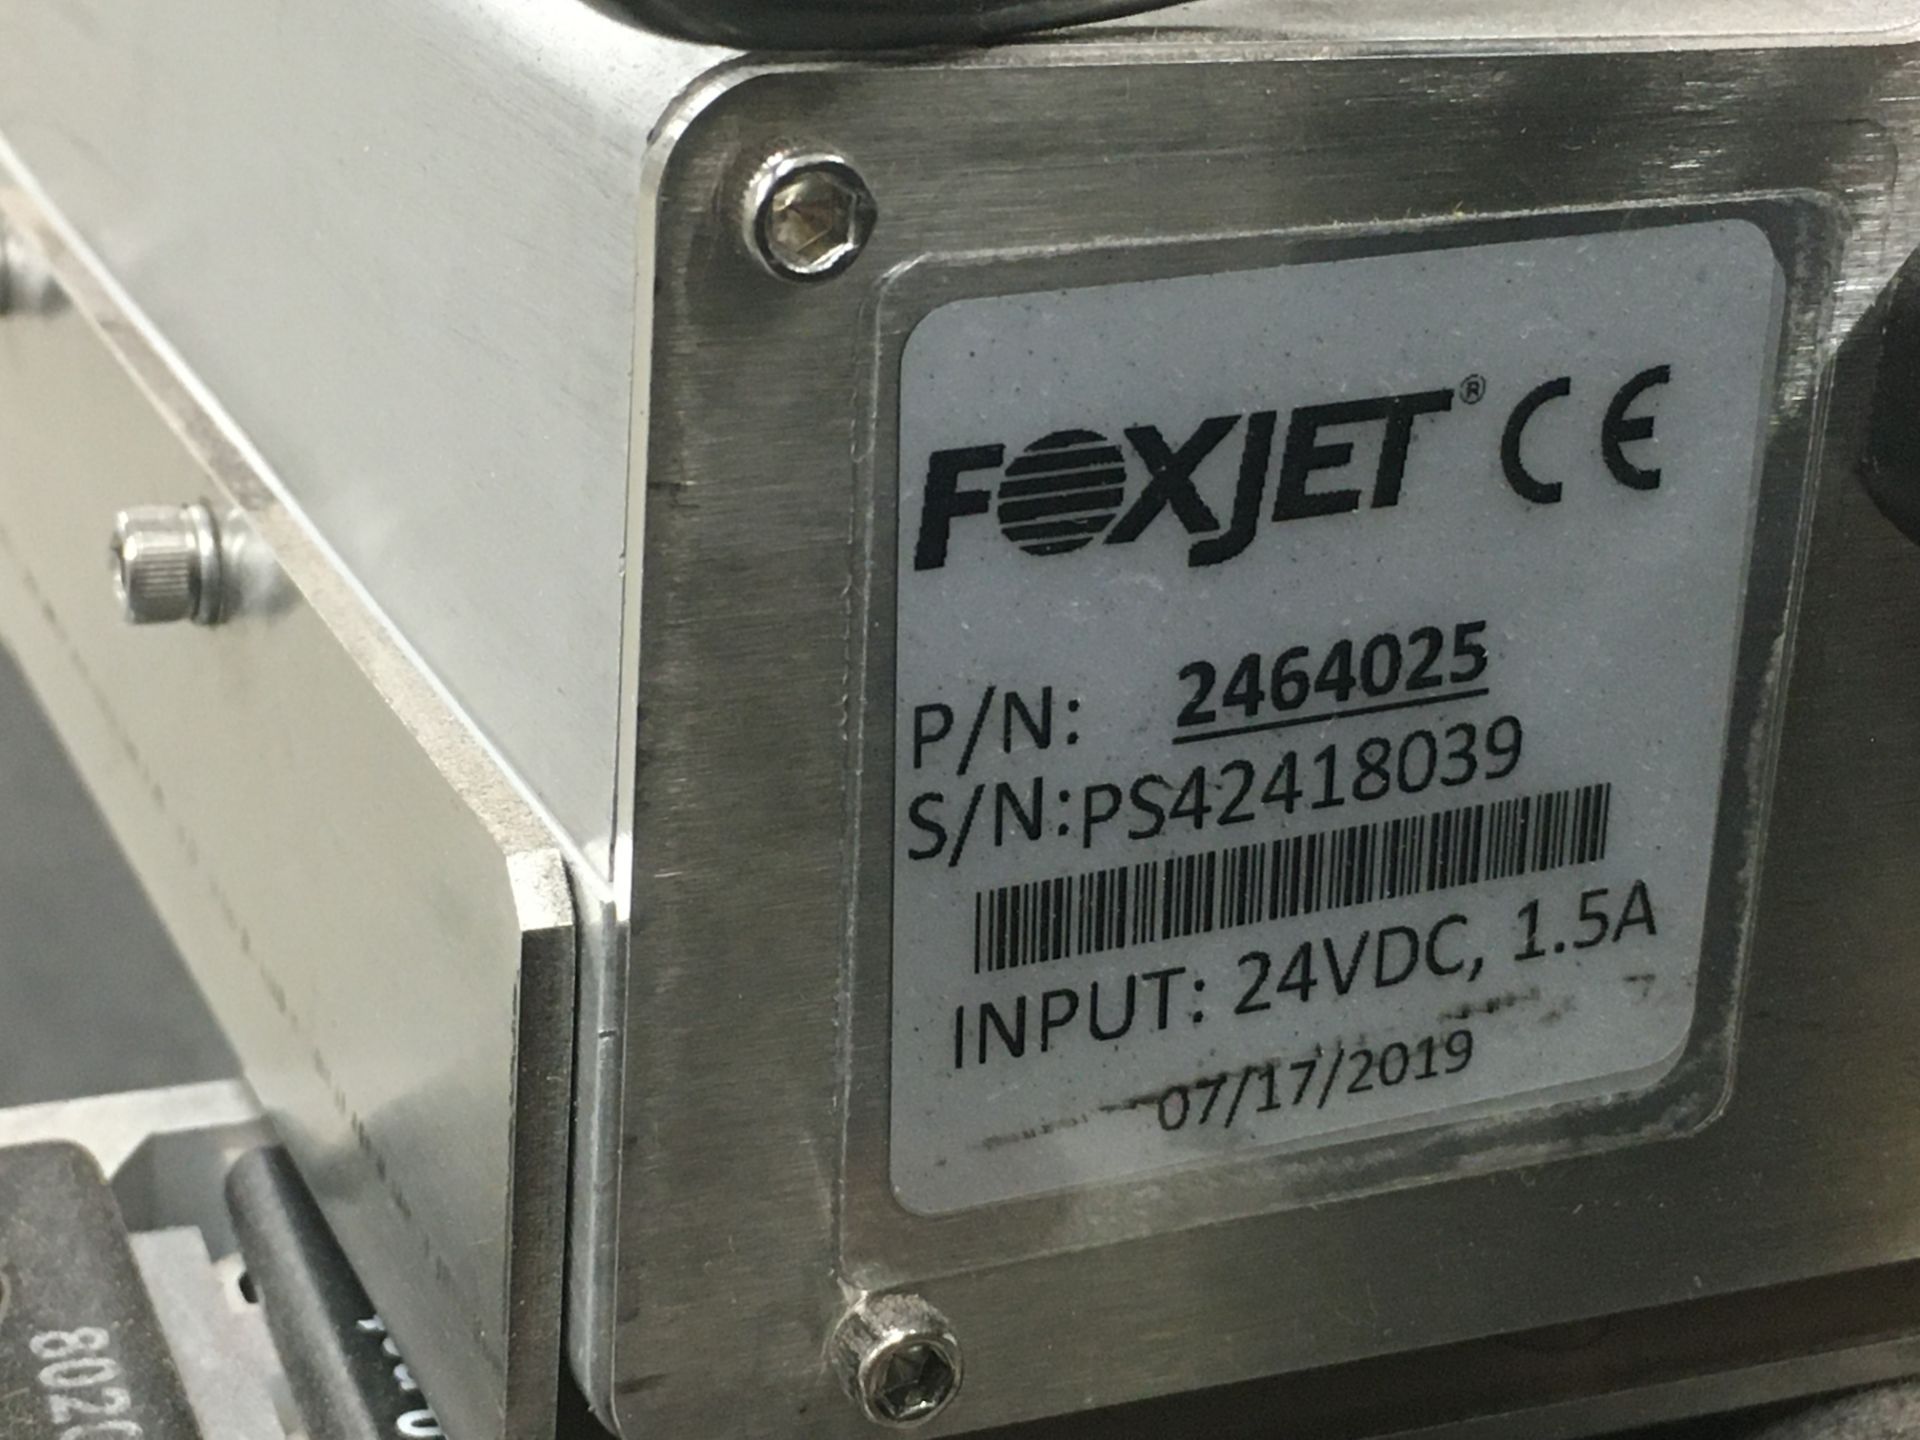 FoxJet In Line Box Printer S/N: PS42418039 Model: 2464025 Rigging: $25 - Image 2 of 2